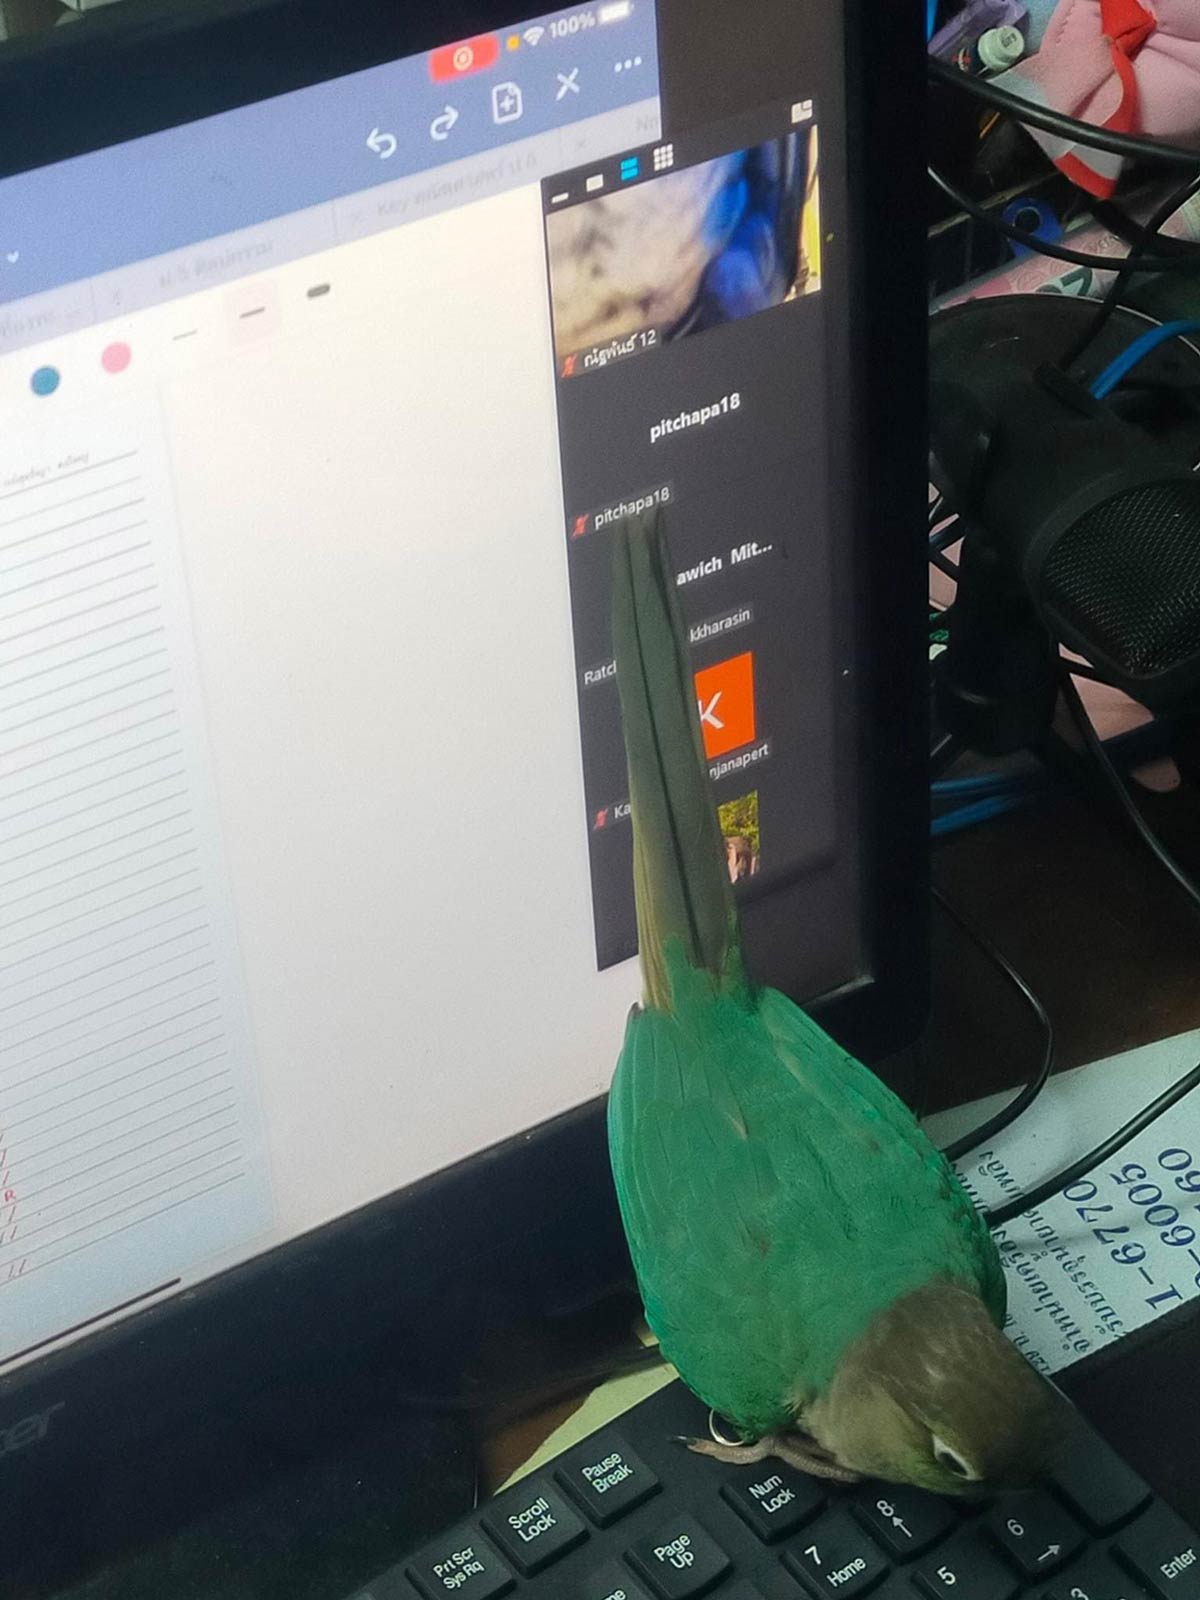 My pet bird being ass during online class